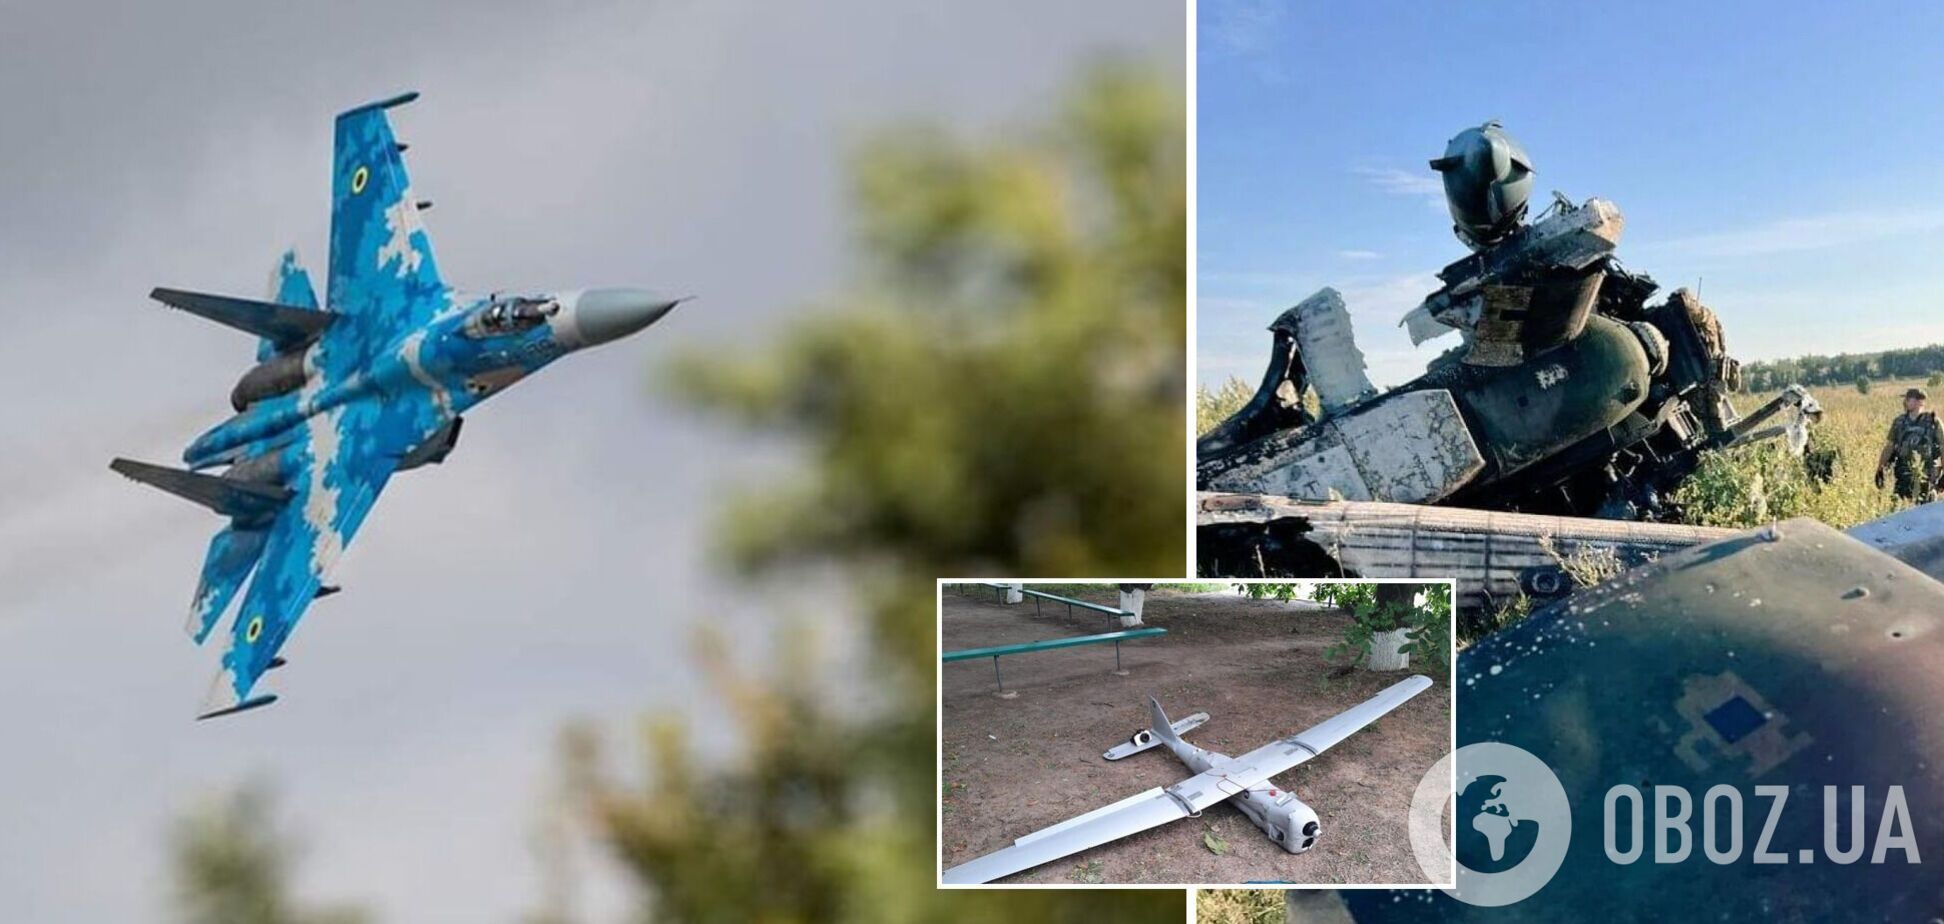 Защитники Украины за сутки уничтожили по два вражеских самолета Су-25 и вертолета, пять БПЛА